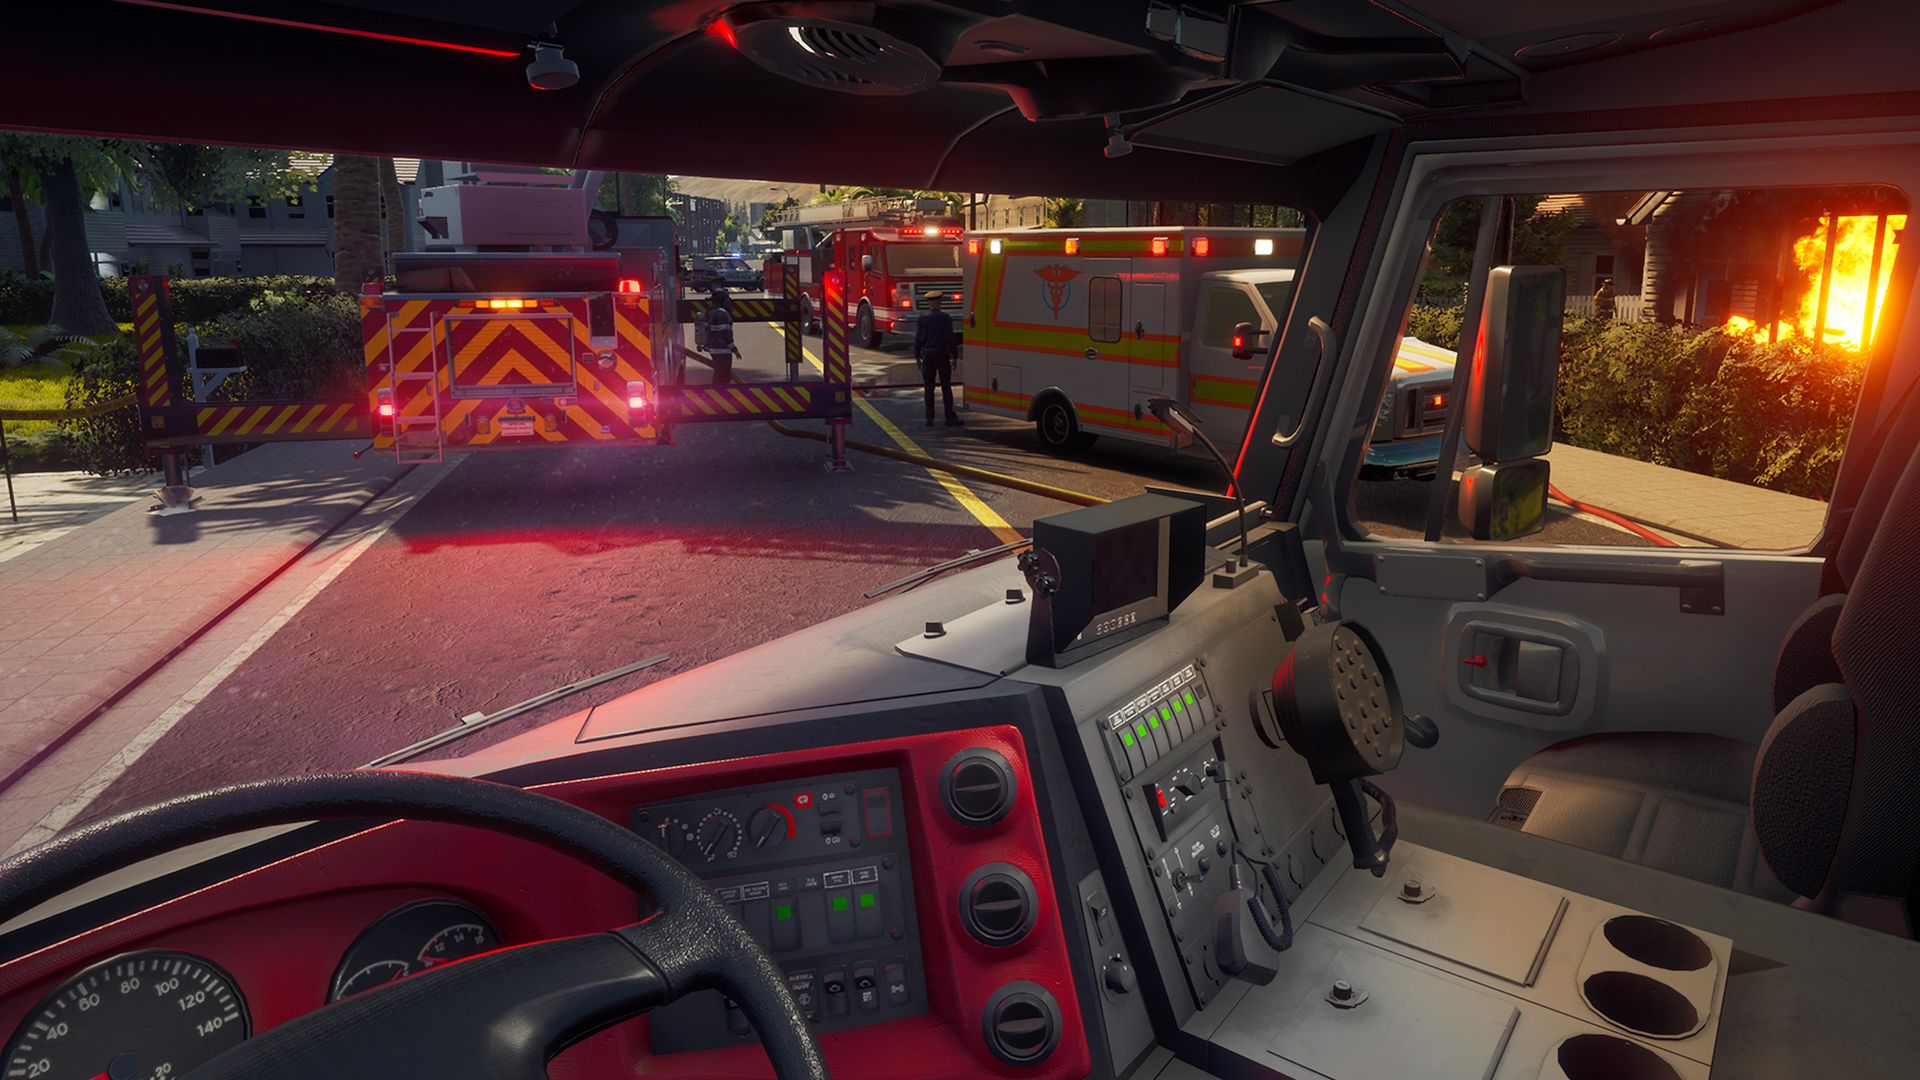 4人協力プレイに対応した消防士シミュレーションゲーム Firefighting Simulator The Squad が11月17日発売決定 実在の消防車や機材が登場するリアルな消防士ゲーム